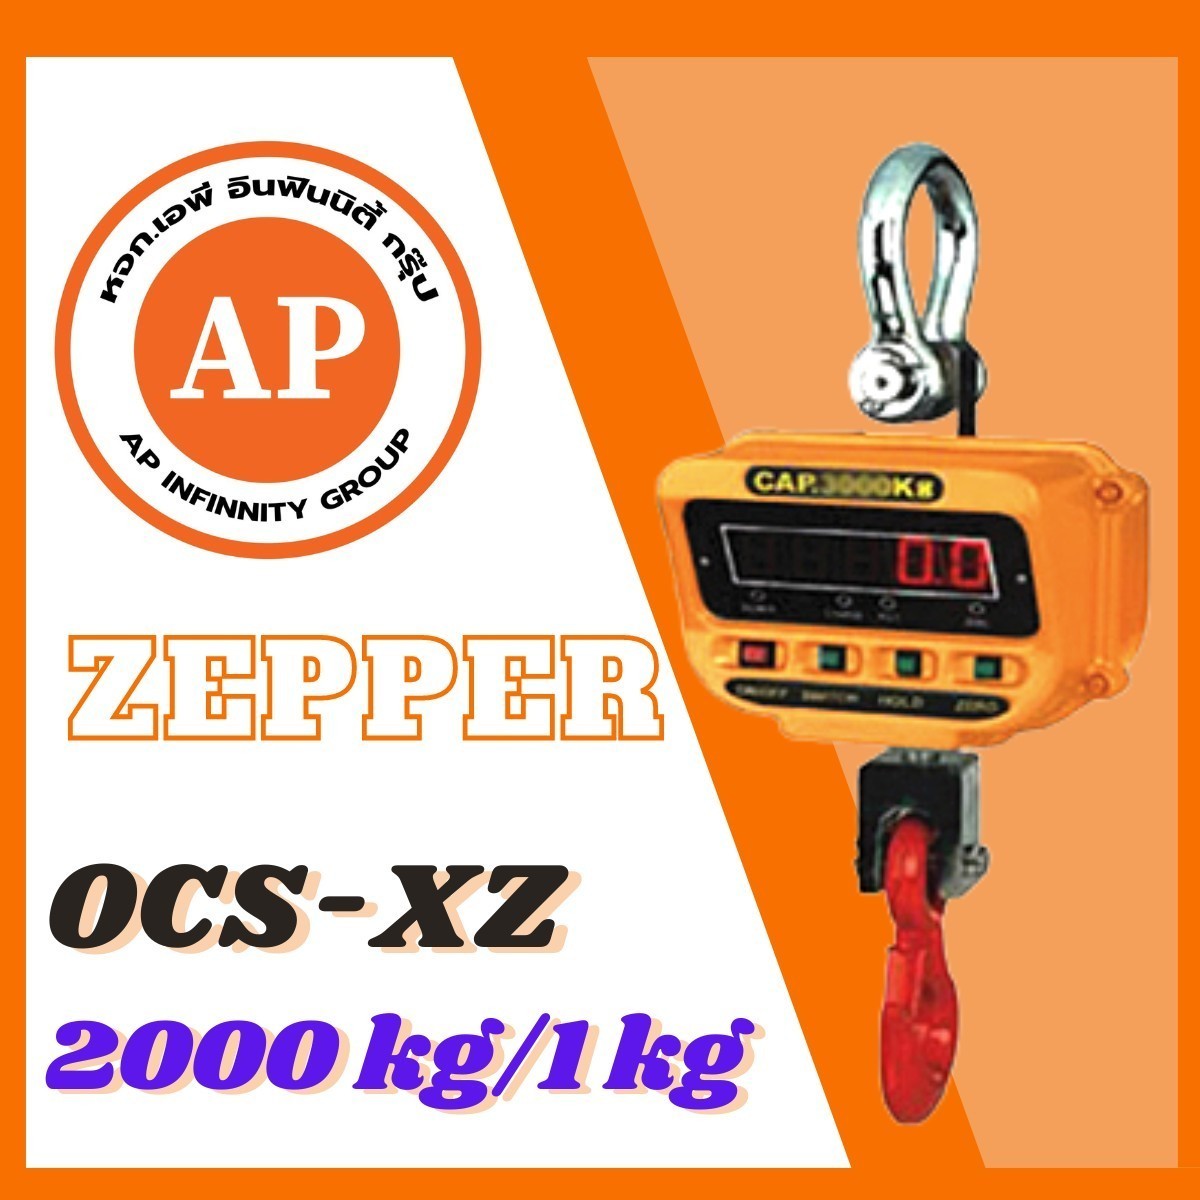 ตาชั่งแขวนดิจิตอล เครื่องชั่งแขวนดิจิตอล เครื่องชั่งแขวน 2000kg ความละเอียด 1kg ZEPPER OCS-XZ2000kg รูปที่ 1